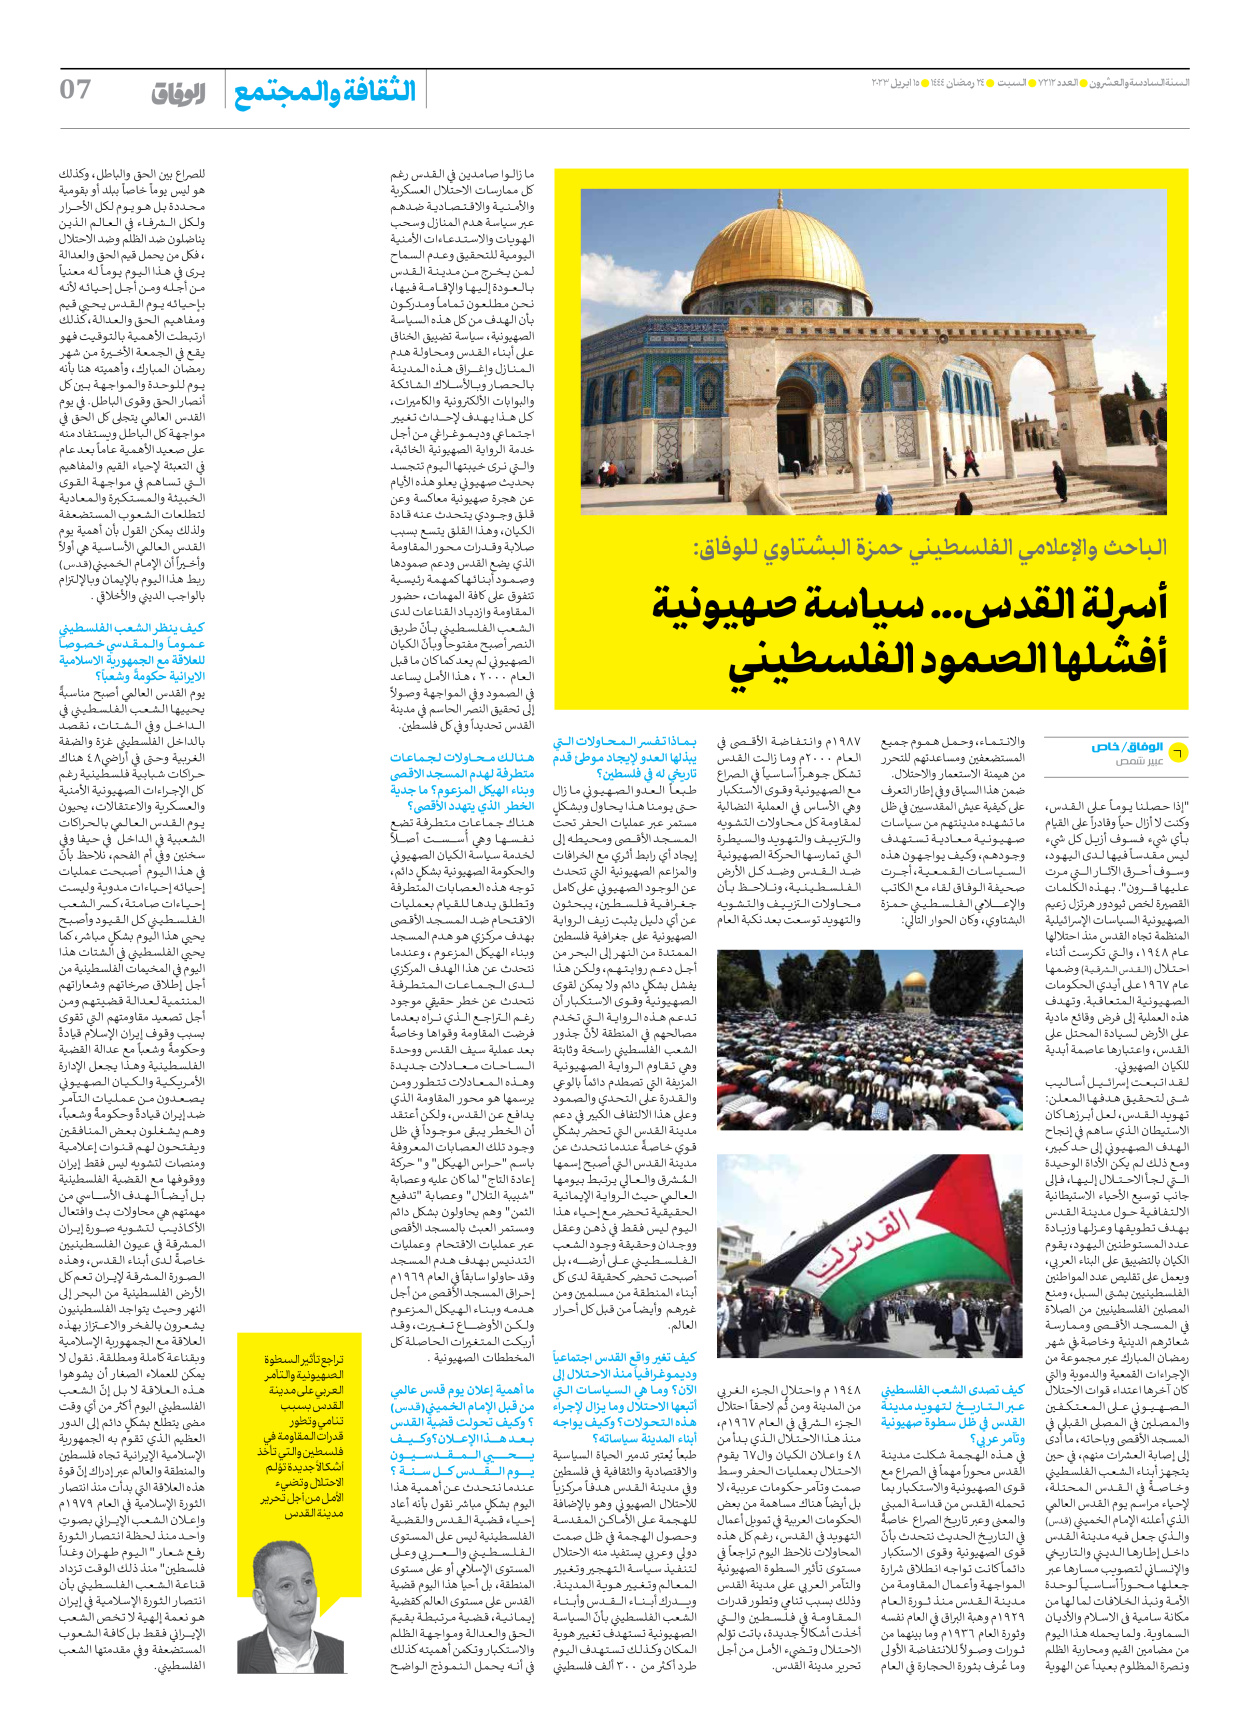 صحیفة ایران الدولیة الوفاق - العدد سبعة آلاف ومائتان واثنا عشر - ١٥ أبريل ٢٠٢٣ - الصفحة ۷